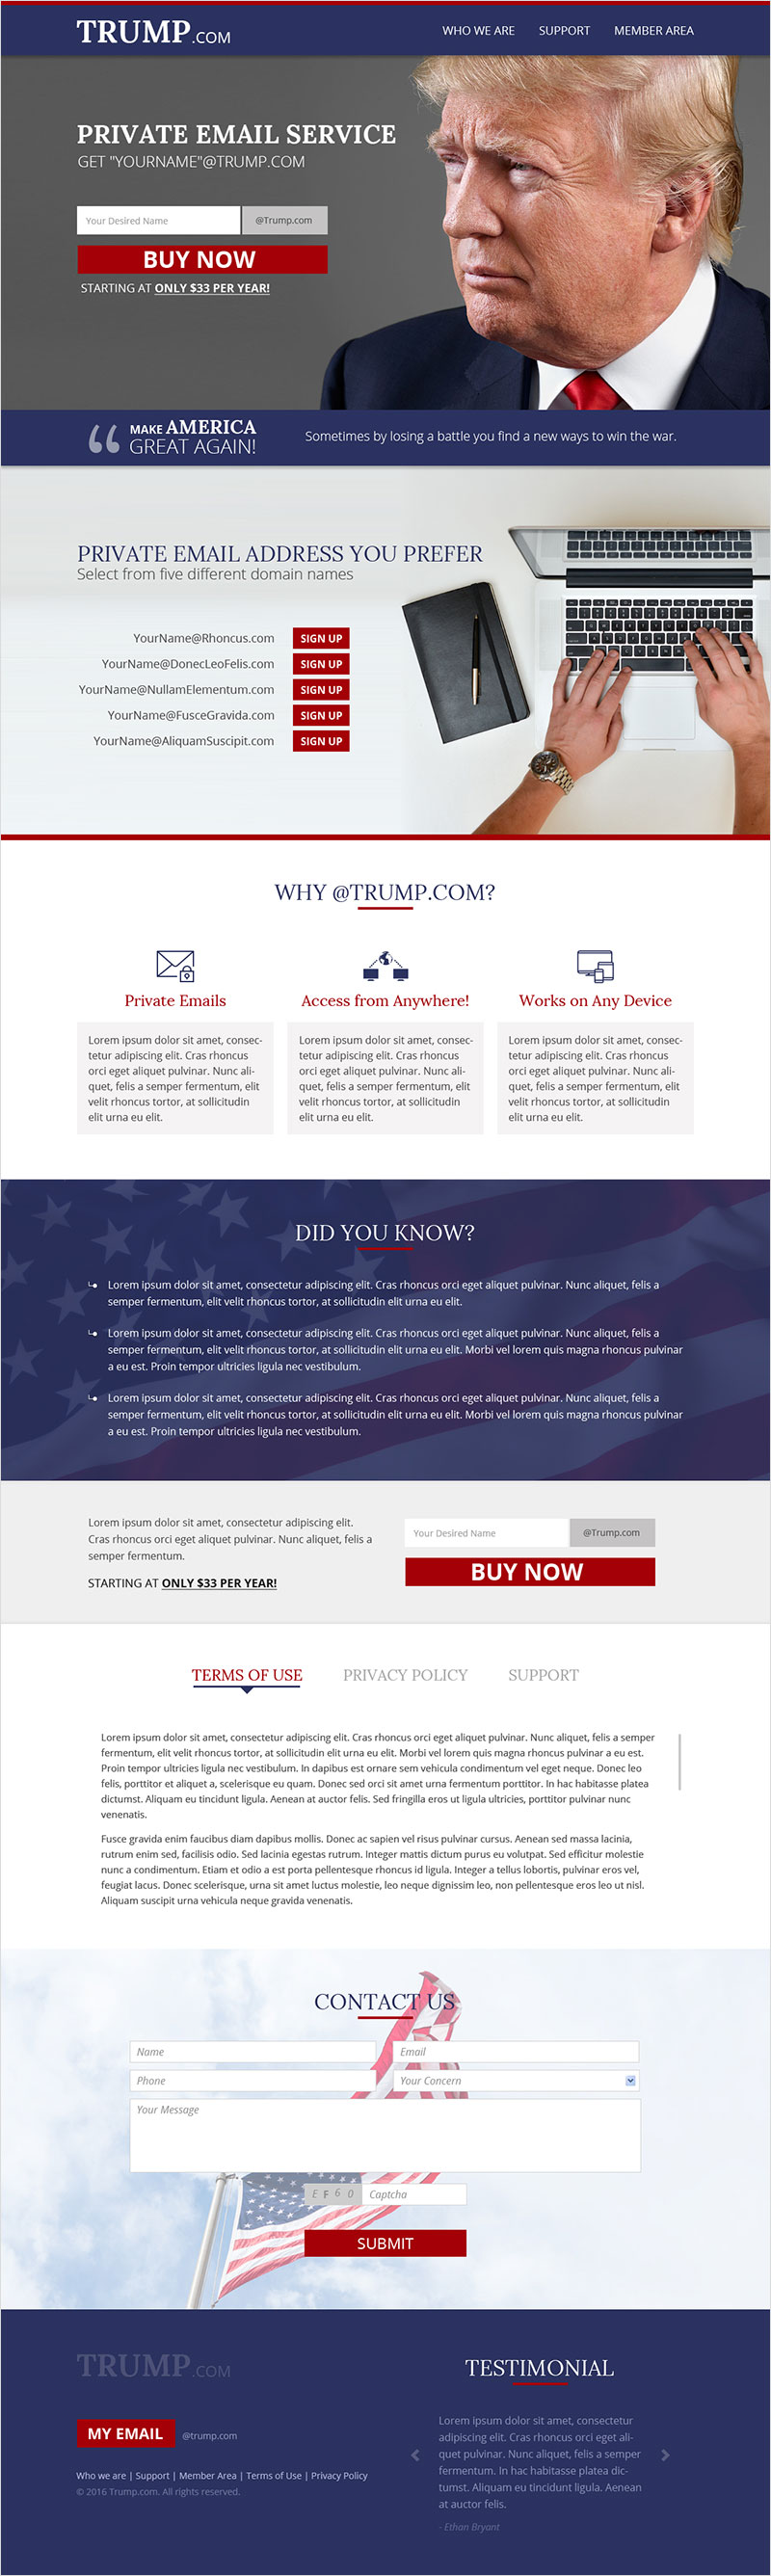 Trump.com - Website Design